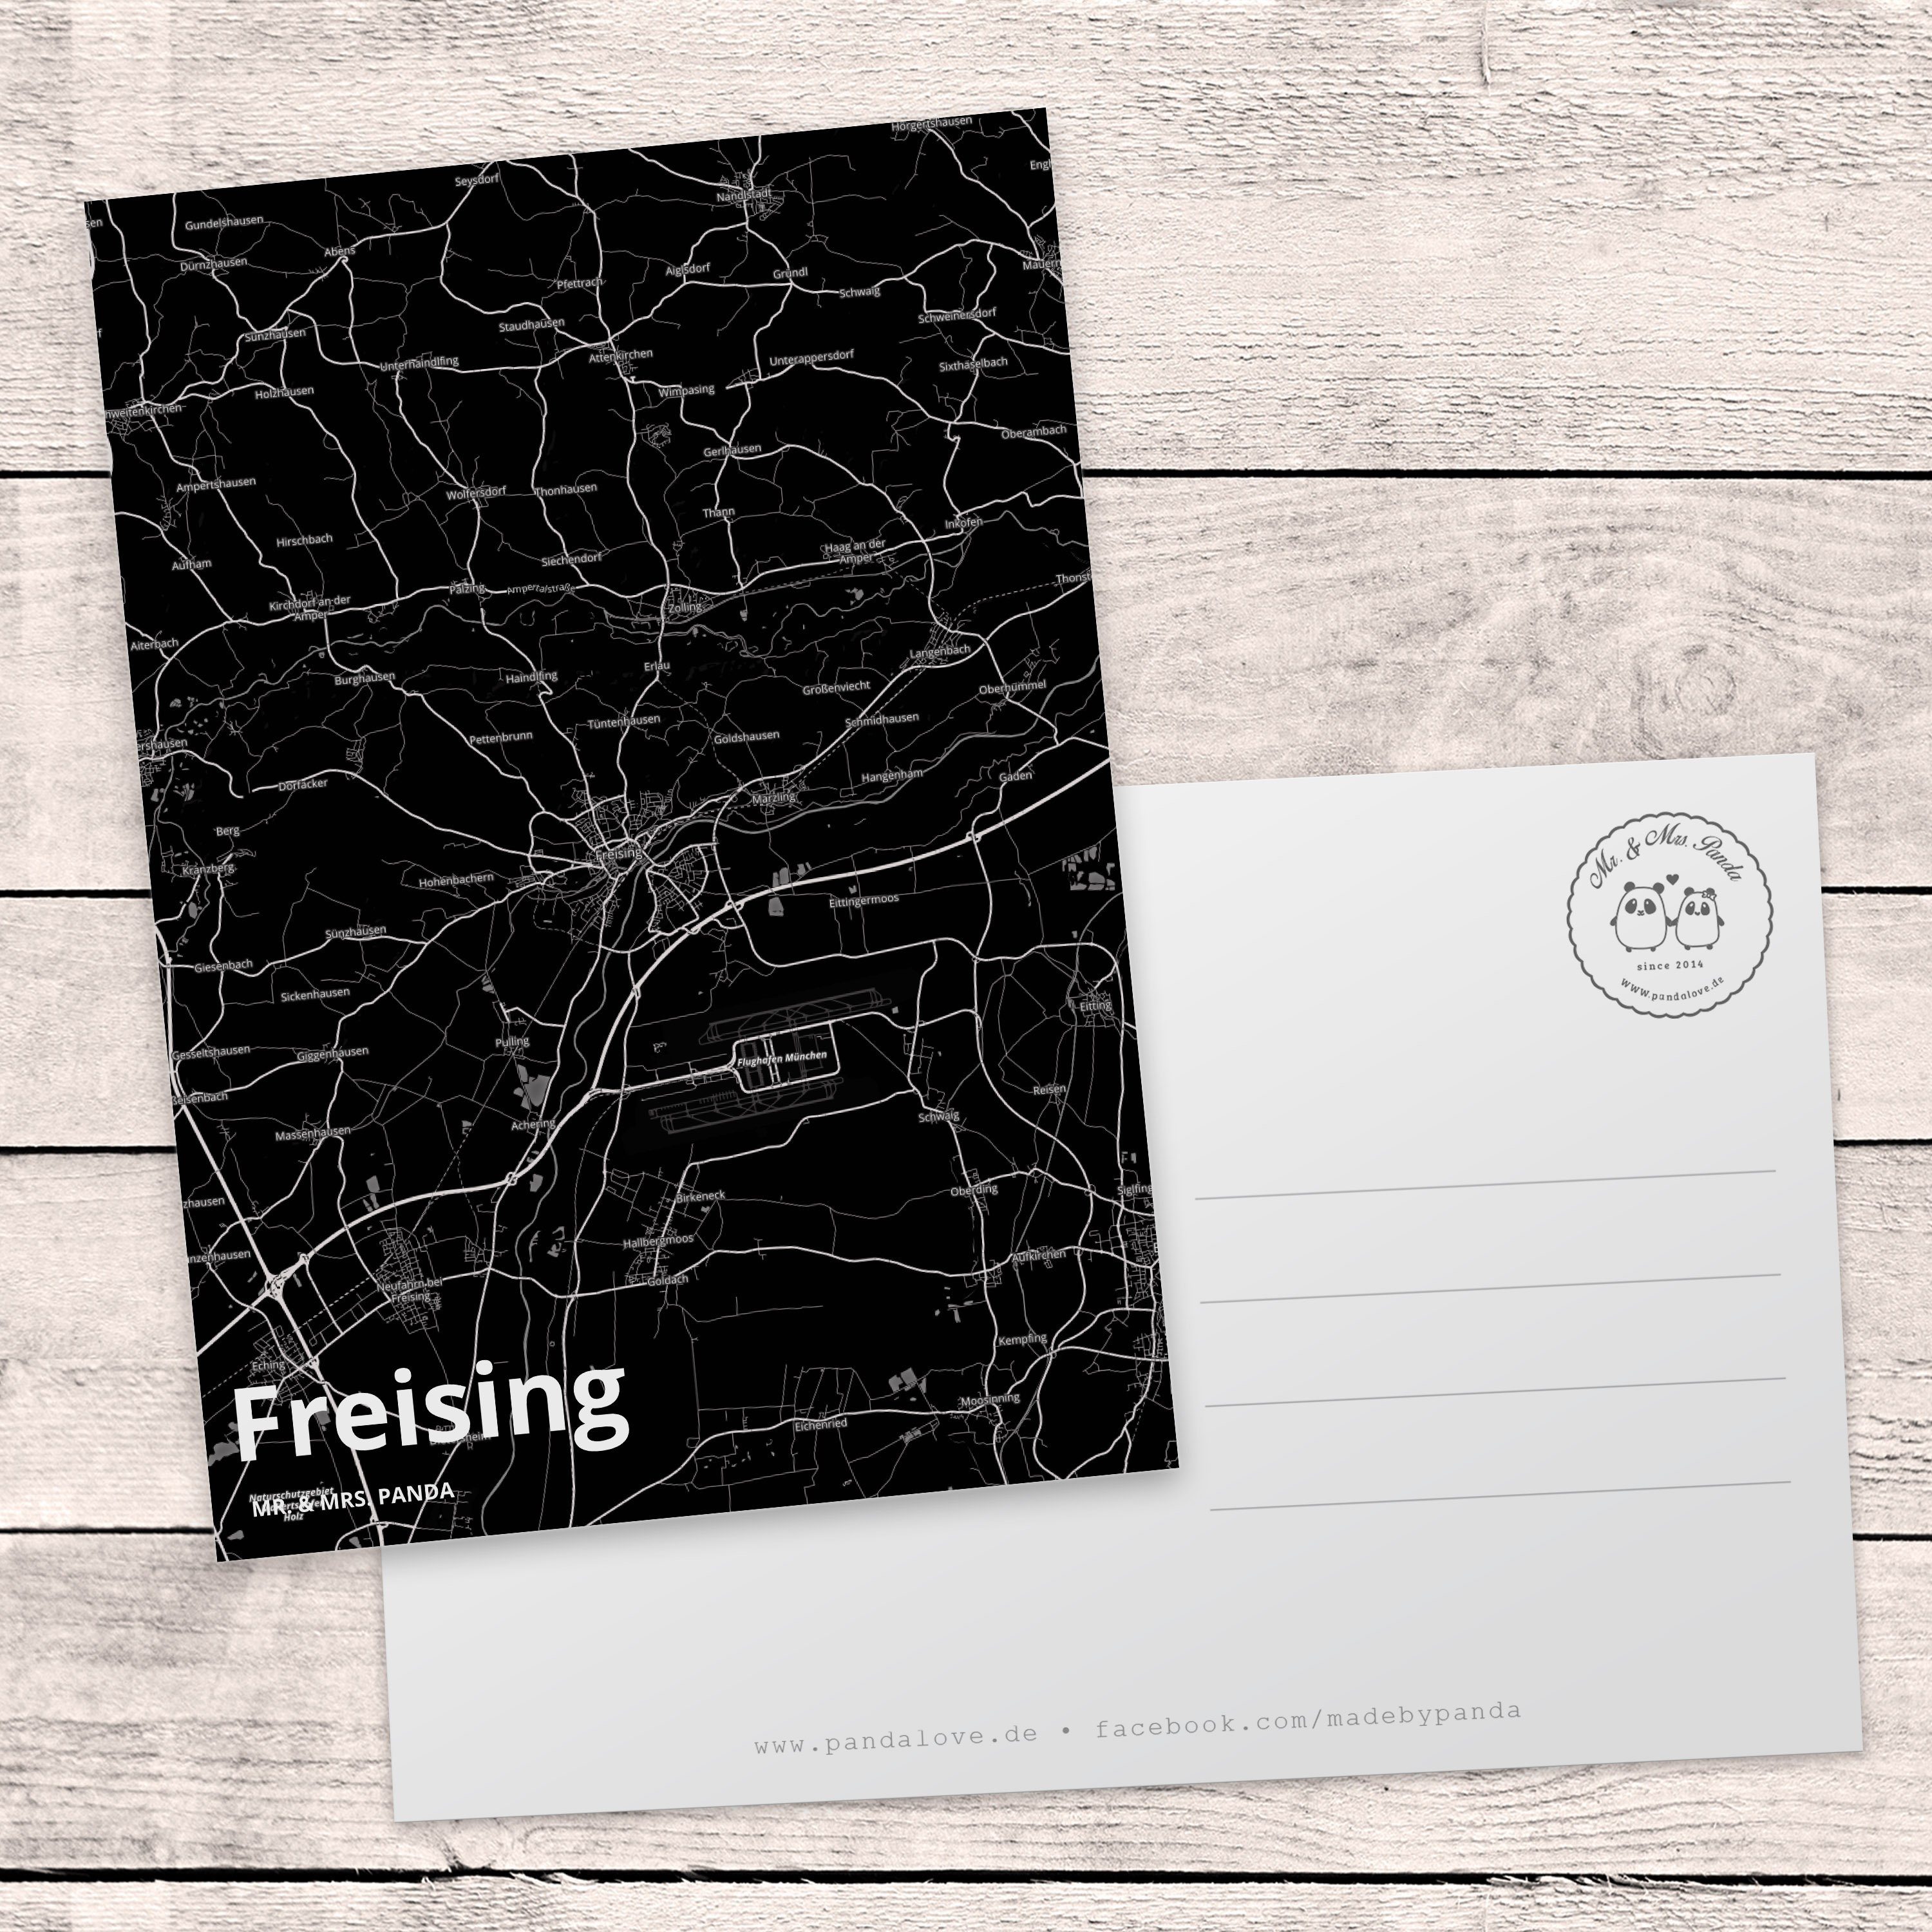 Ort Geschenkkarte, Mr. Mrs. & Postkarte Grußkarte, Geschenk, Freising - Einladung, Städte, Panda